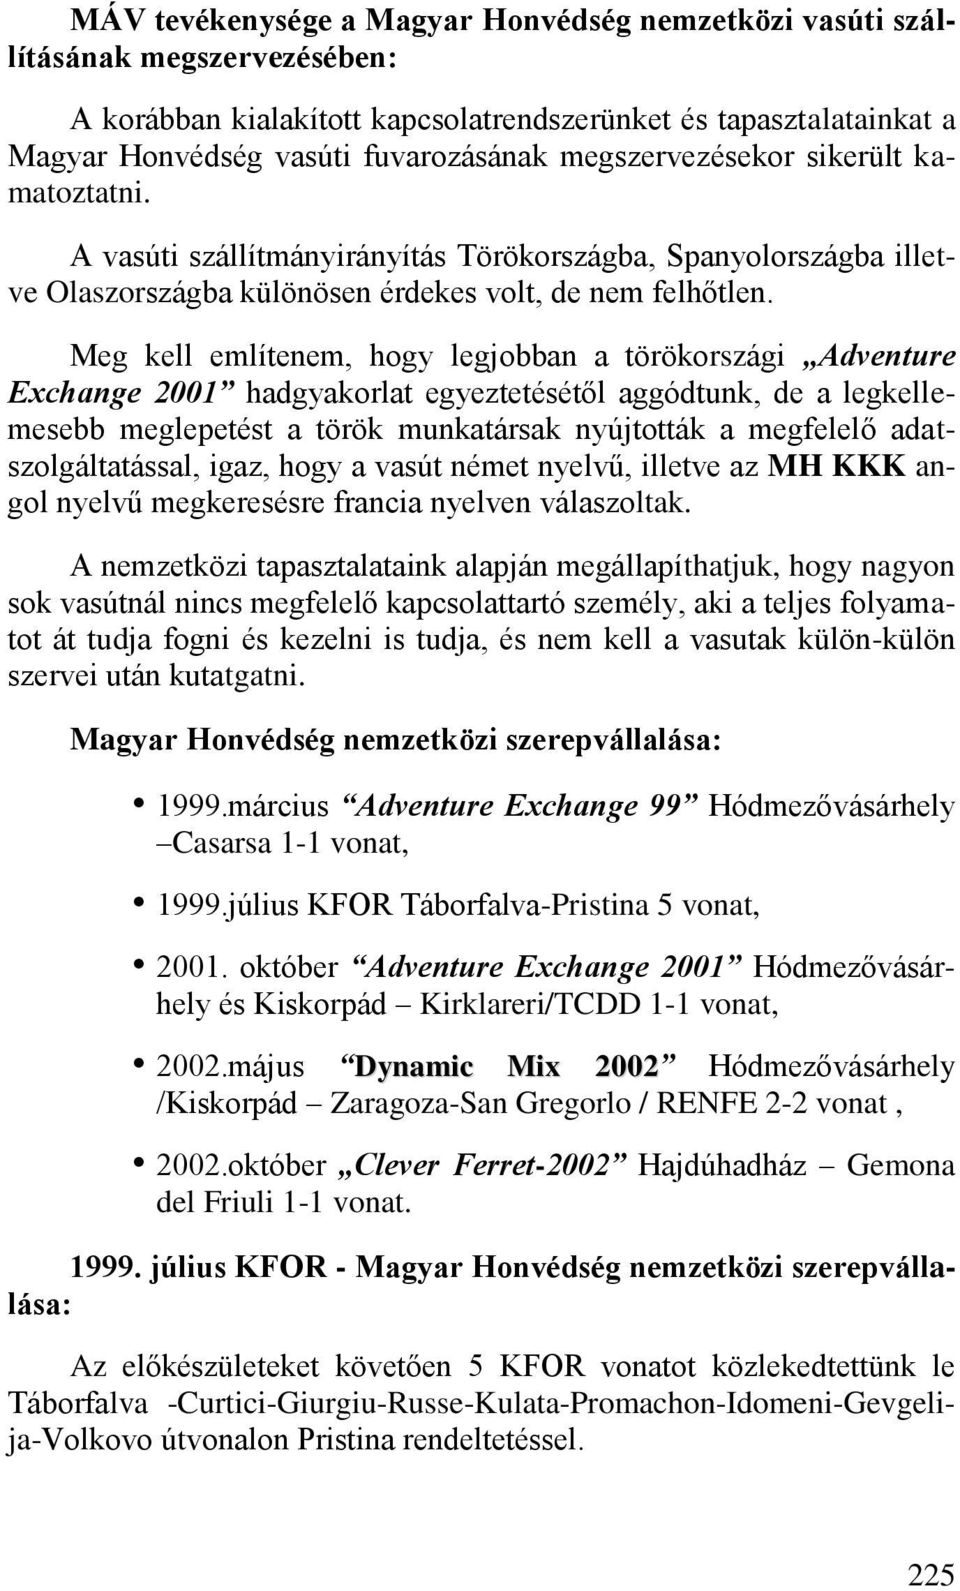 Meg kell említenem, hogy legjobban a törökországi Adventure Exchange 2001 hadgyakorlat egyeztetésétől aggódtunk, de a legkellemesebb meglepetést a török munkatársak nyújtották a megfelelő